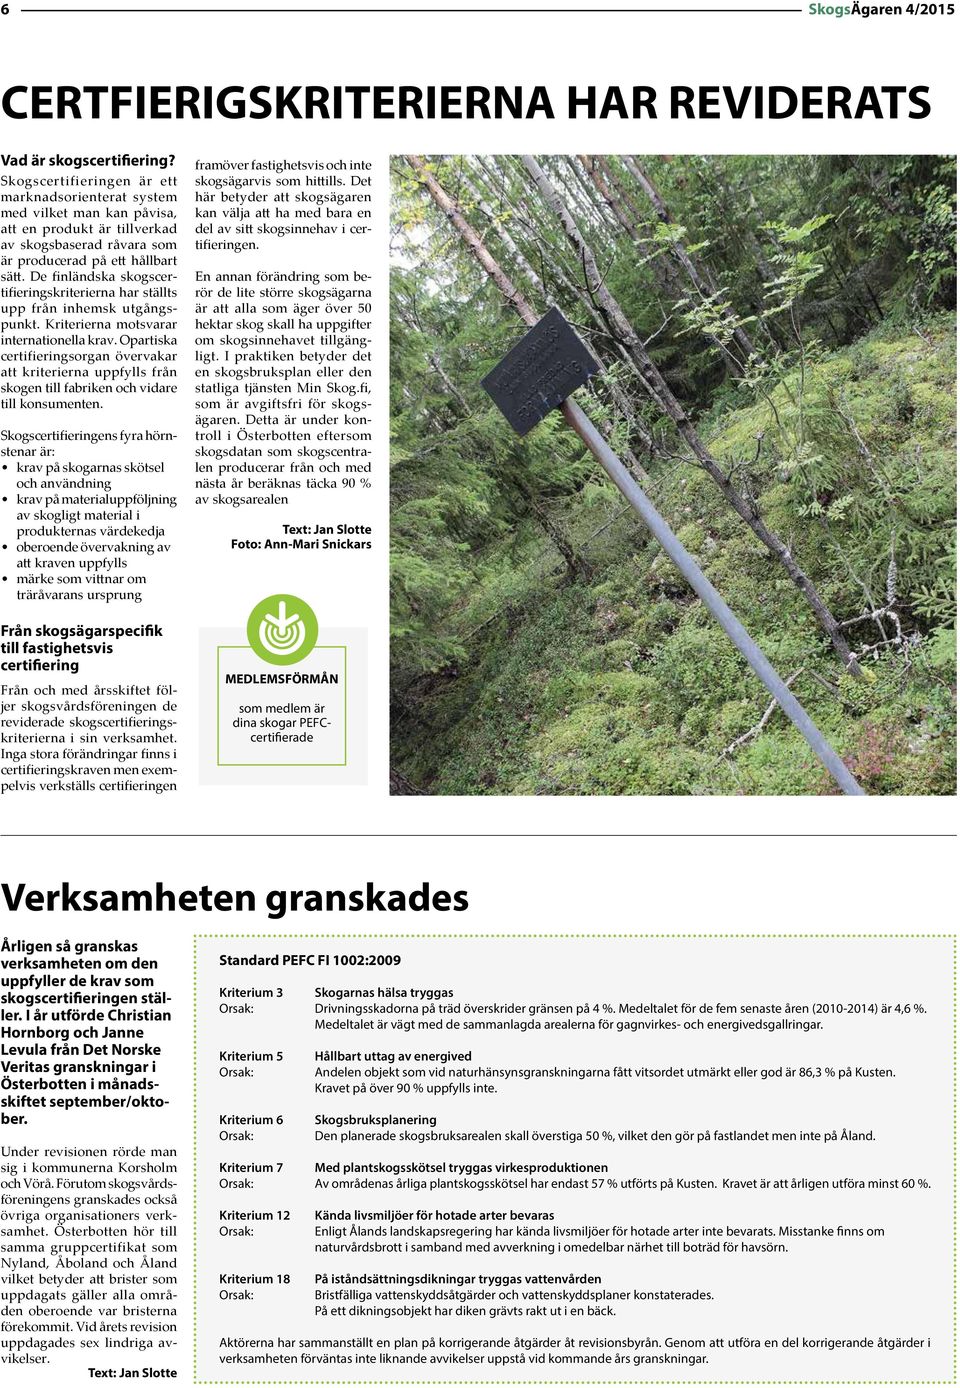 De finländska skogscertifieringskriterierna har ställts upp från inhemsk utgångspunkt. Kriterierna motsvarar internationella krav.